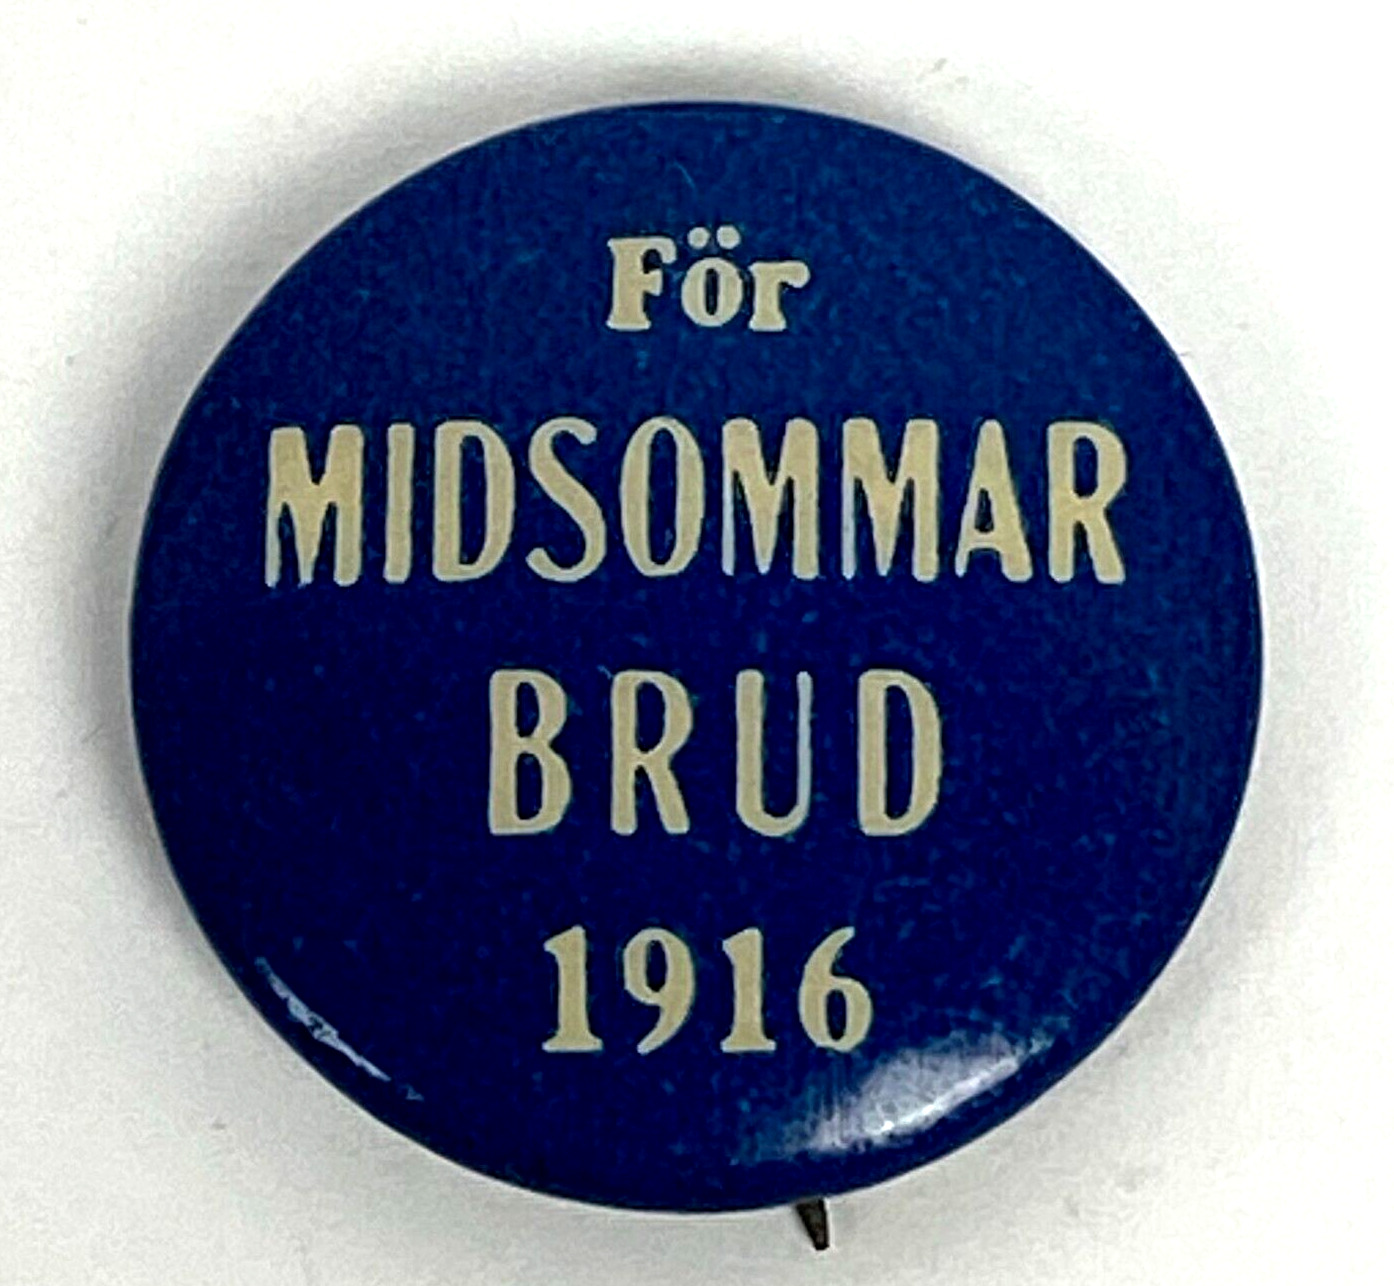 1916 For Midsommar Brud Midsummer Bride St Paul MN Pinback Button Vintage